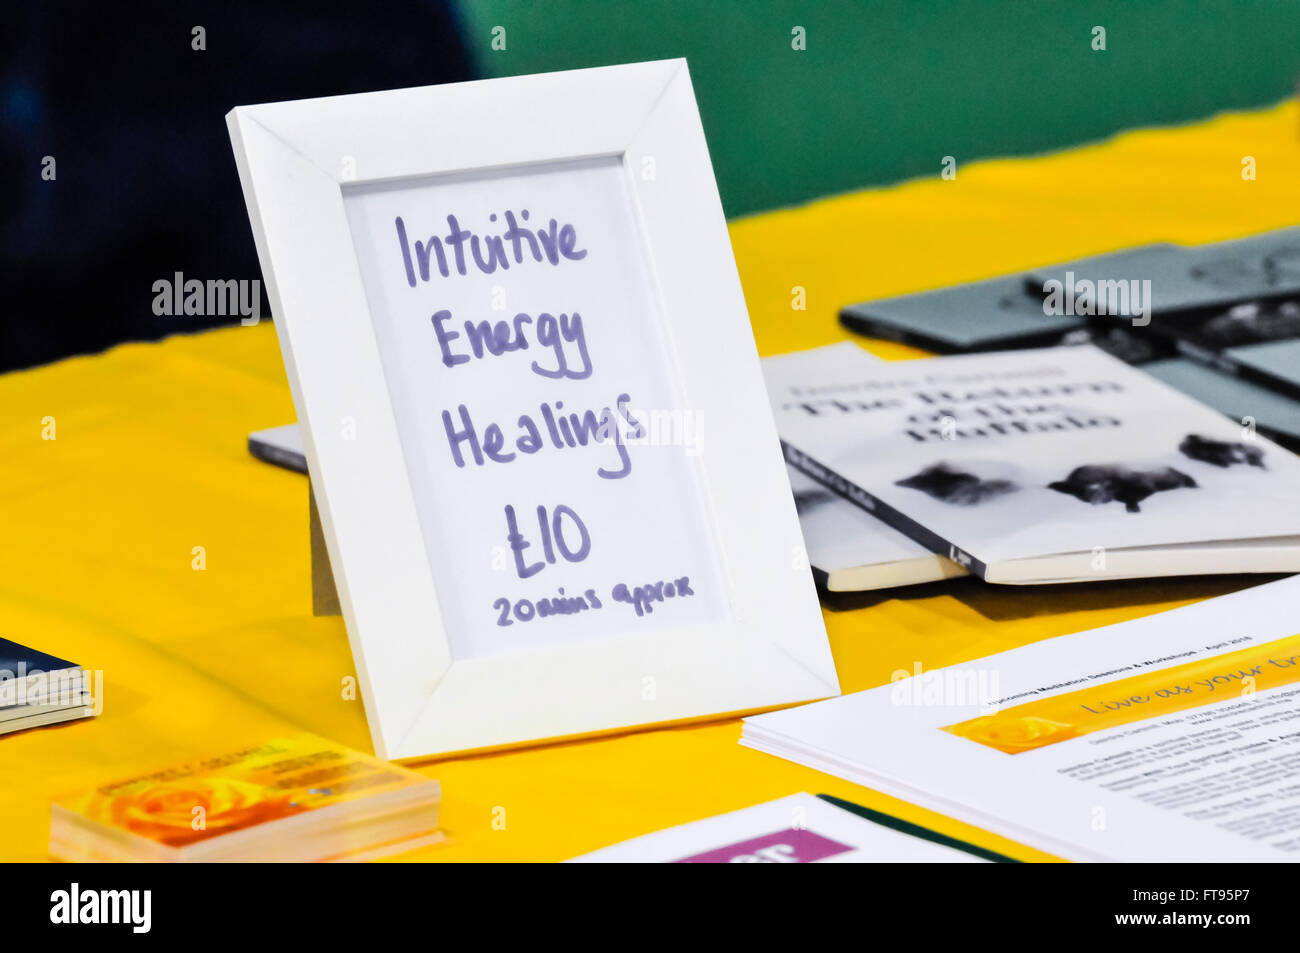 Un segno pubblicizza intuitiva di guarigioni di energia per 10 sterline a un approccio olistico e fiera spirituale. Foto Stock